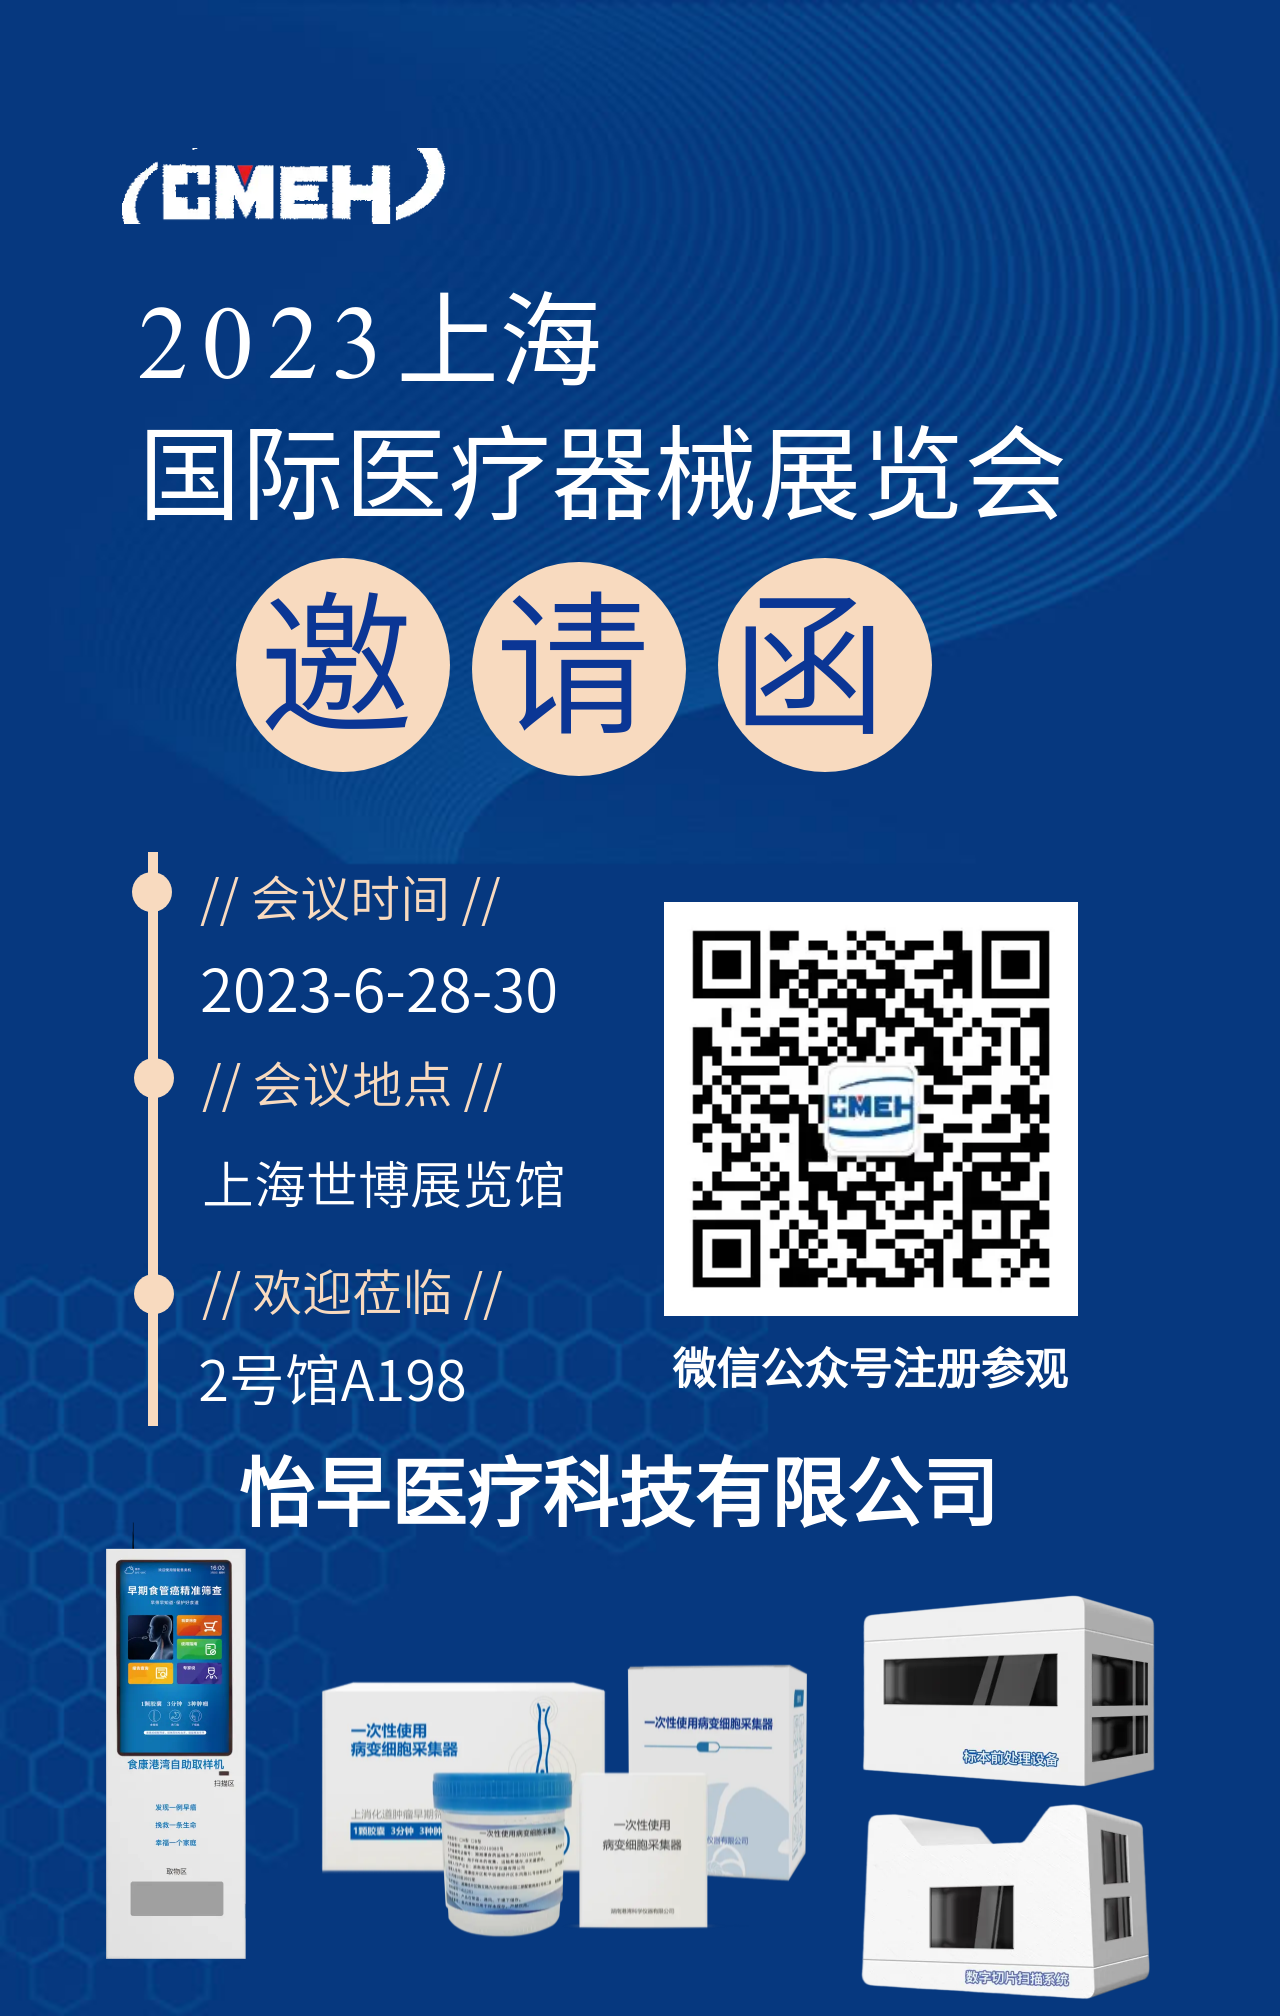 展商推荐：怡早医疗科技有限公司邀您参观上海国际医疗器械展览会